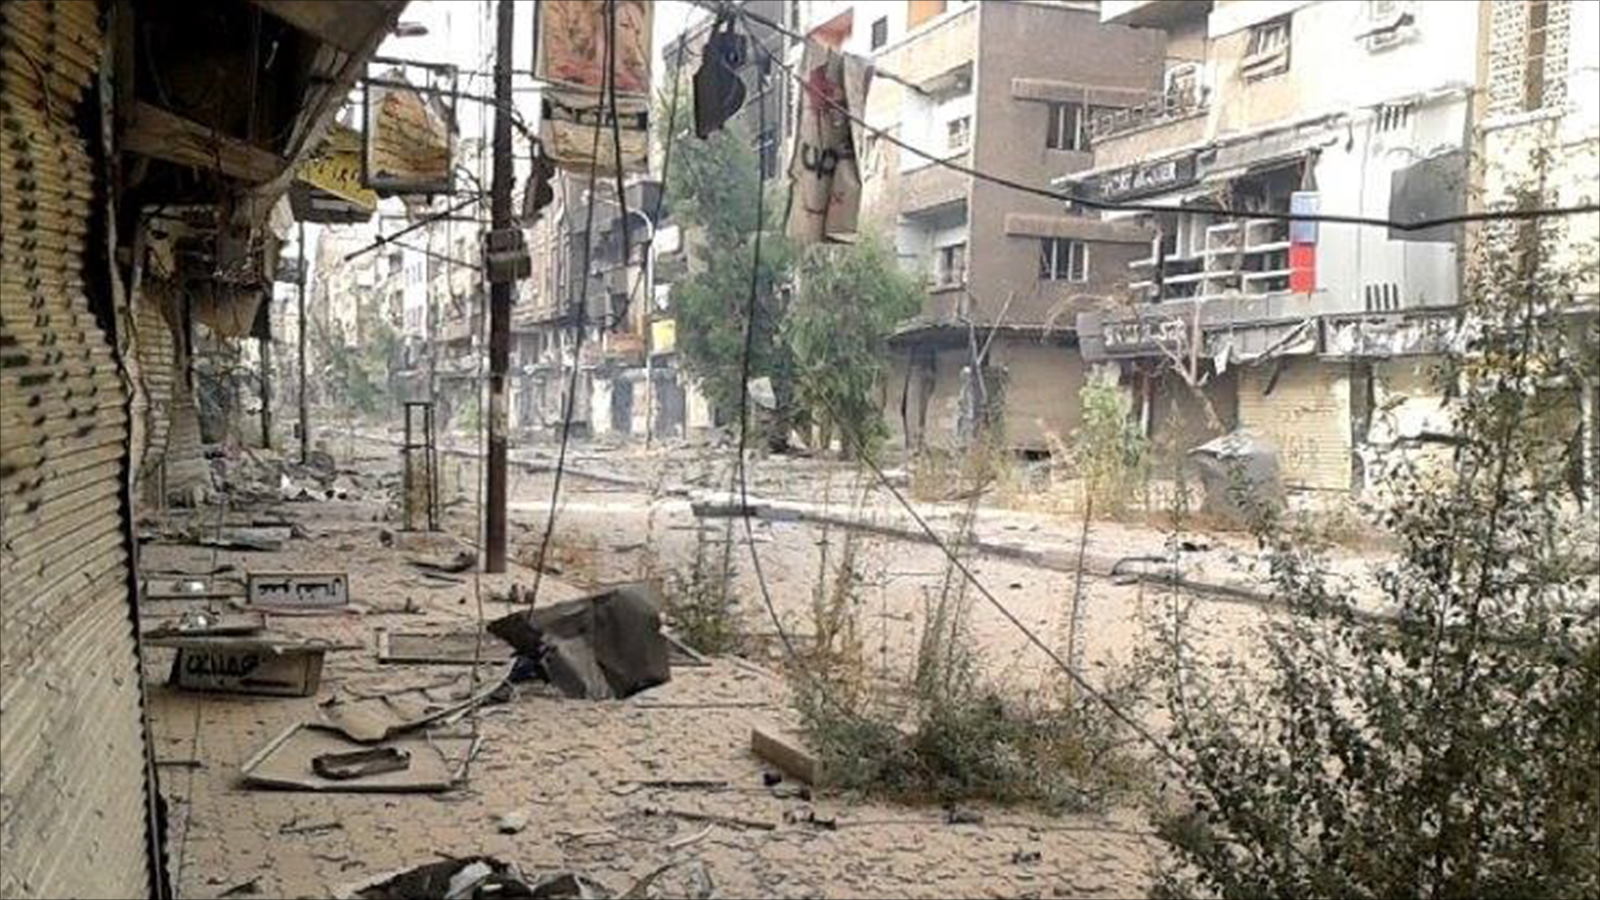 دمار واسع في مخيم اليرموك نتيجة المعارك والقصف المستمر (الجزيرة)